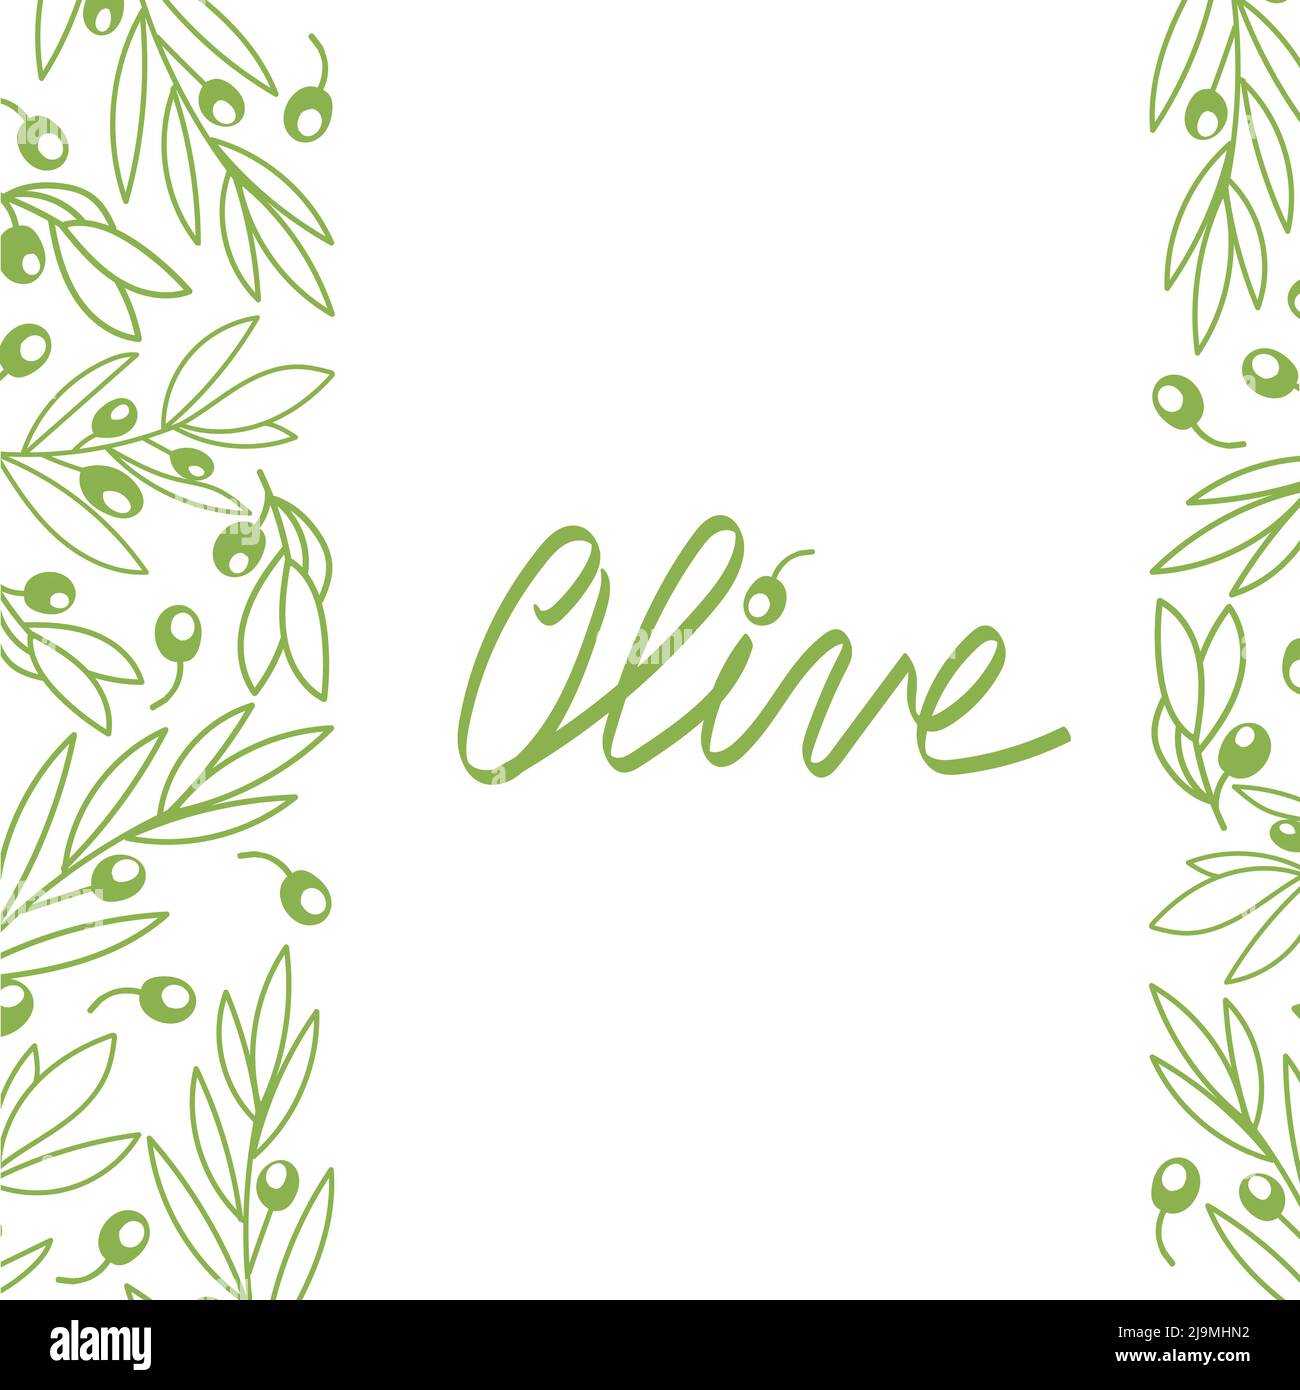 Bannière avec olive sur fond blanc. Un grand design pour la publicité du marché de l'huile d'olive, une entreprise pour les épiceries. Éléments dessinés à la main dans un fl Illustration de Vecteur